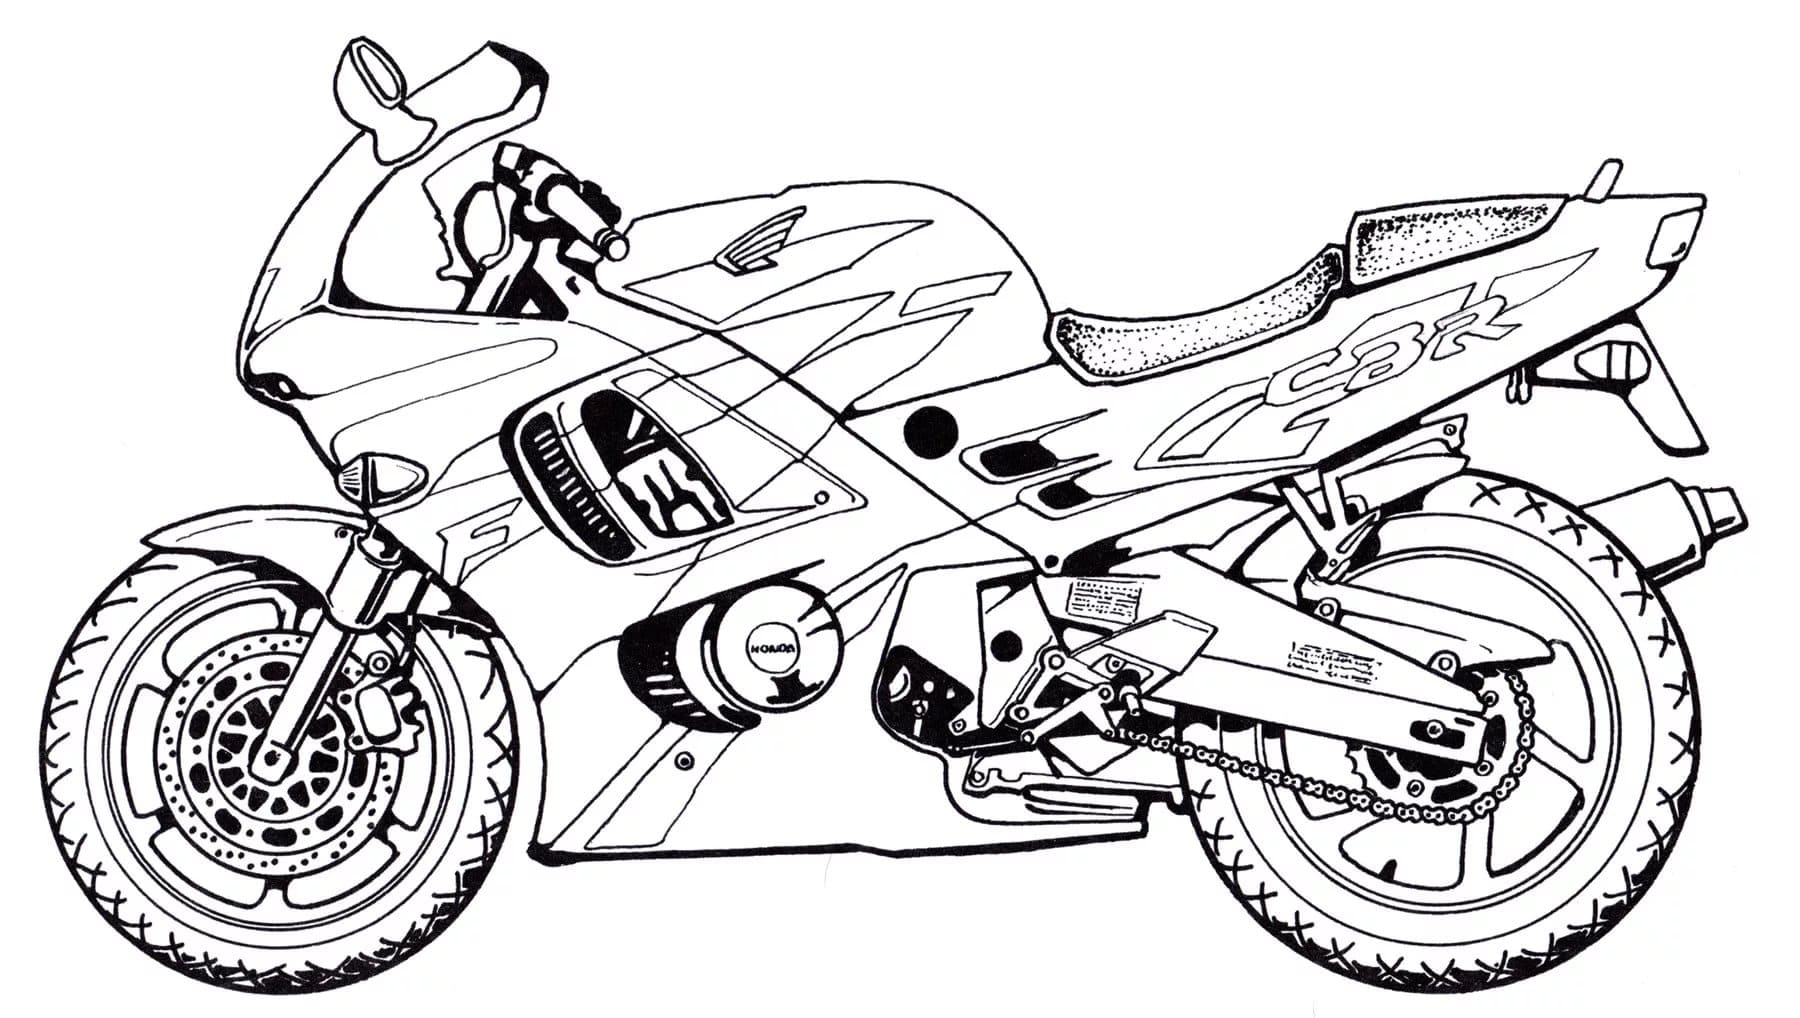 Ausmalbild motorrad - Die hochwertigsten Ausmalbild motorrad unter die Lupe genommen